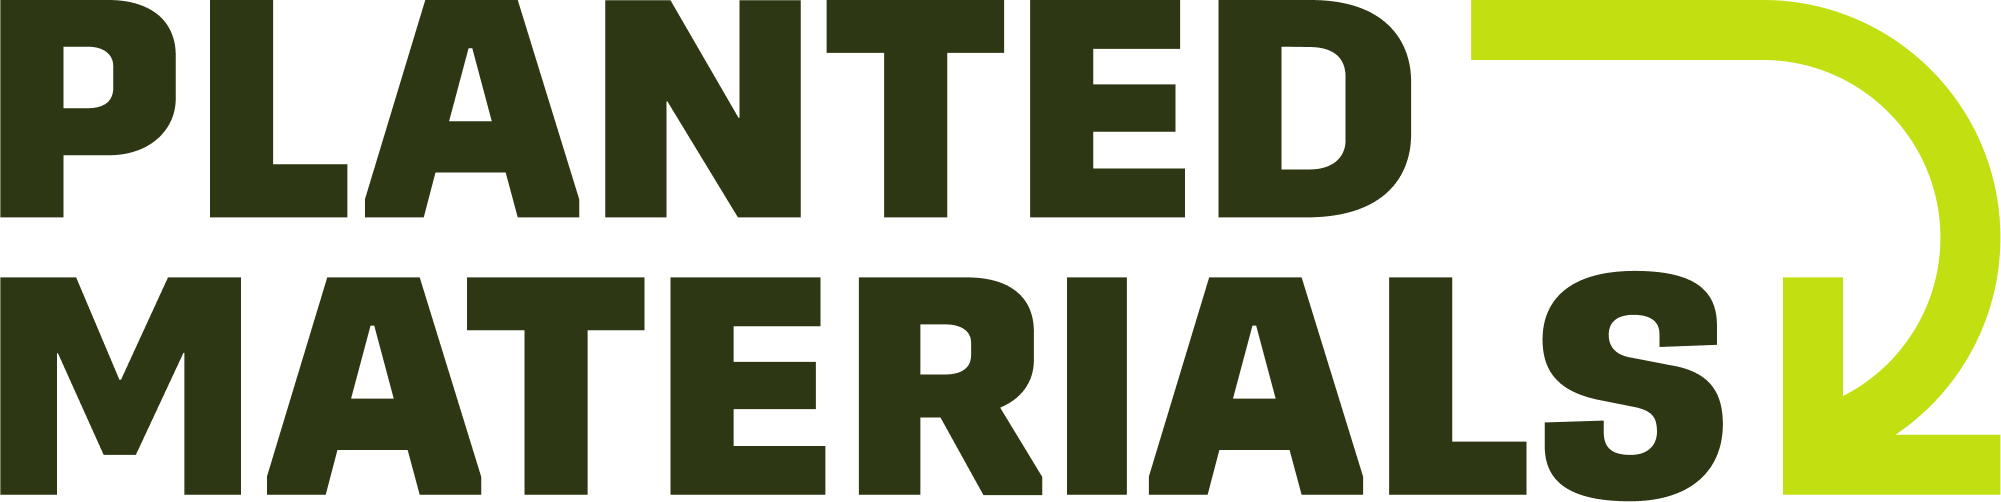 PlantedMaterials_Logo_Green-Full-Color.png